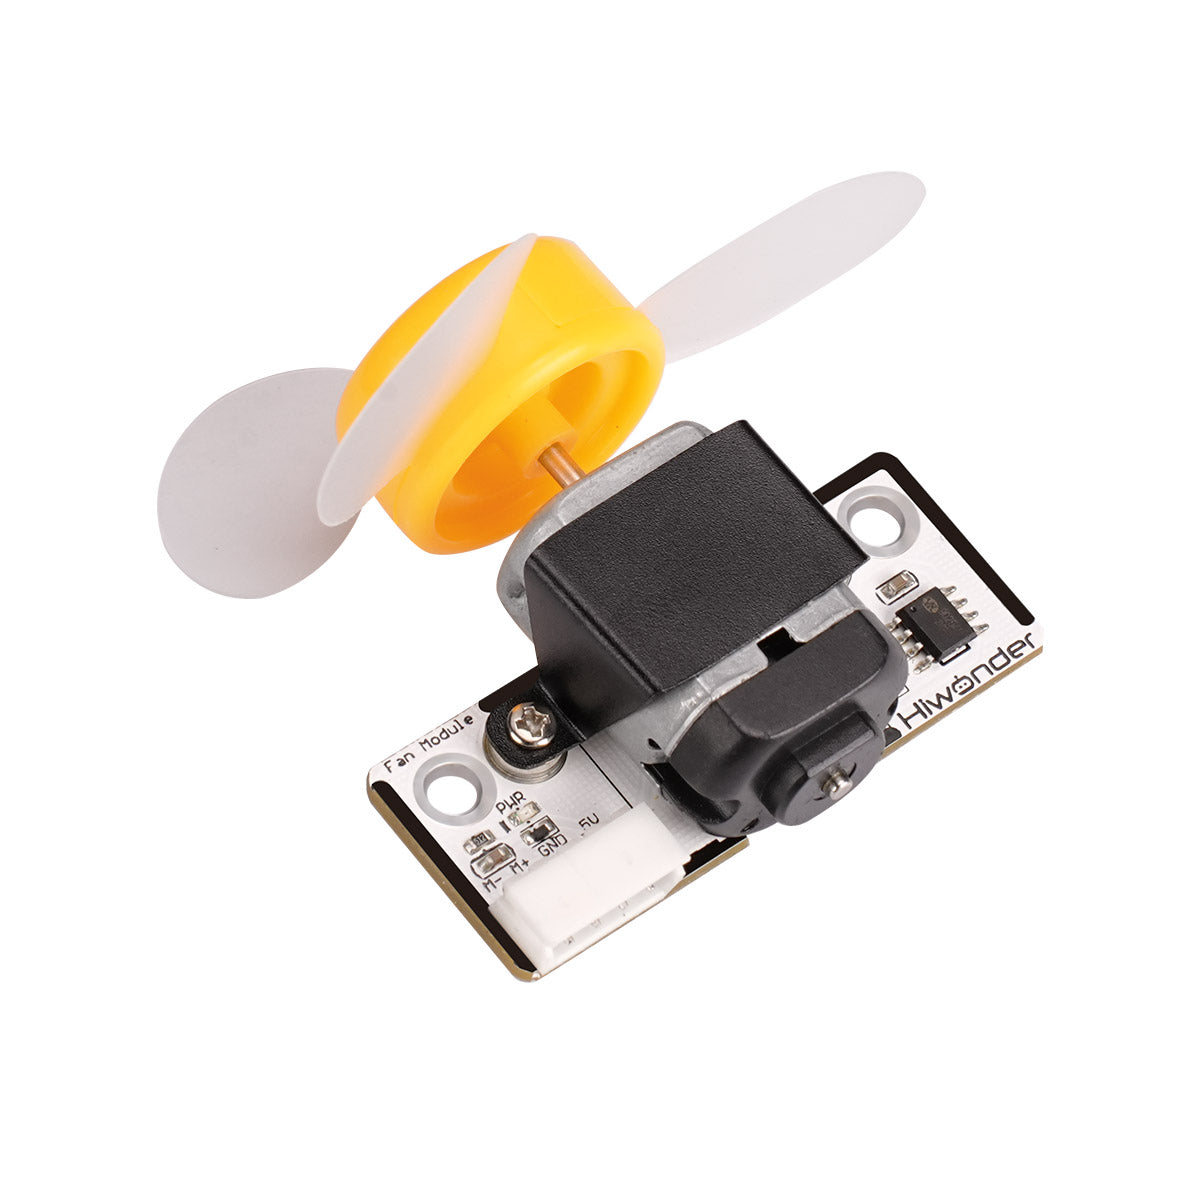 Fan Module: Hiwonder Robot Module Compatible with Arduino/ Raspberry Pi/ Jetson Nano/ micro:bit